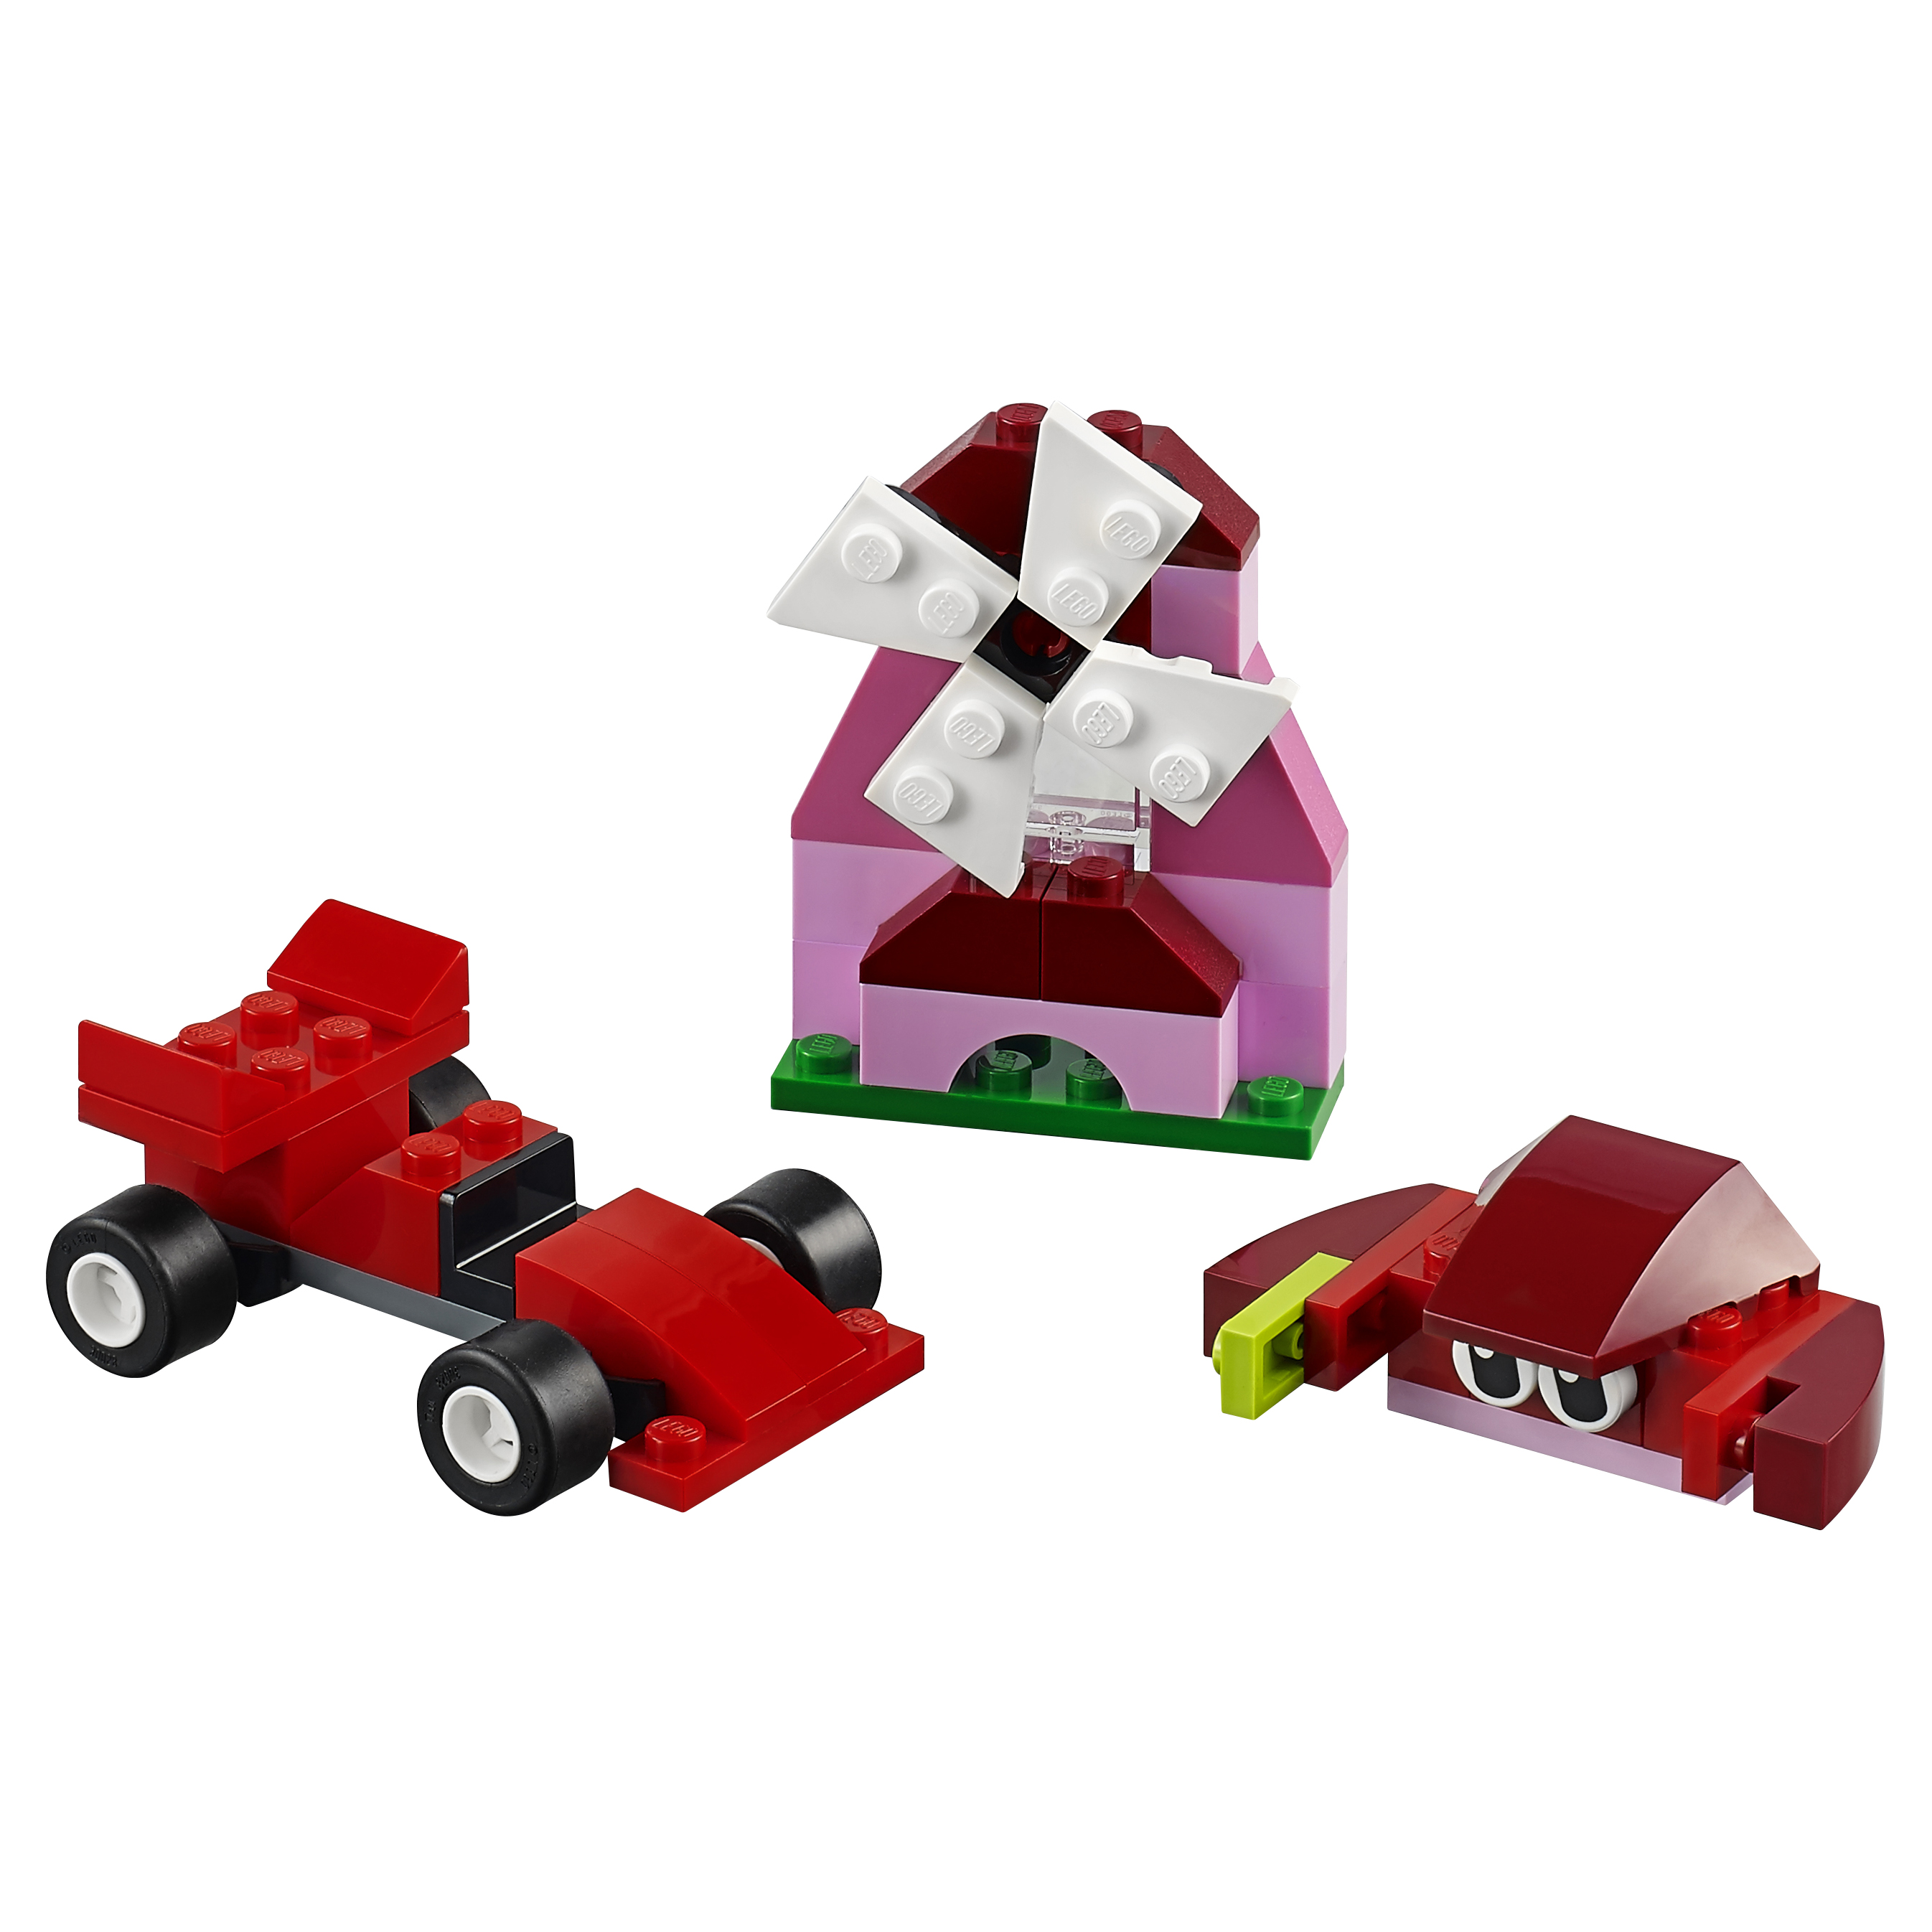 Конструктор LEGO Classic Красный набор для творчества (10707) конструктор lego classic дополнение к набору для творчества – пастельные а 10694